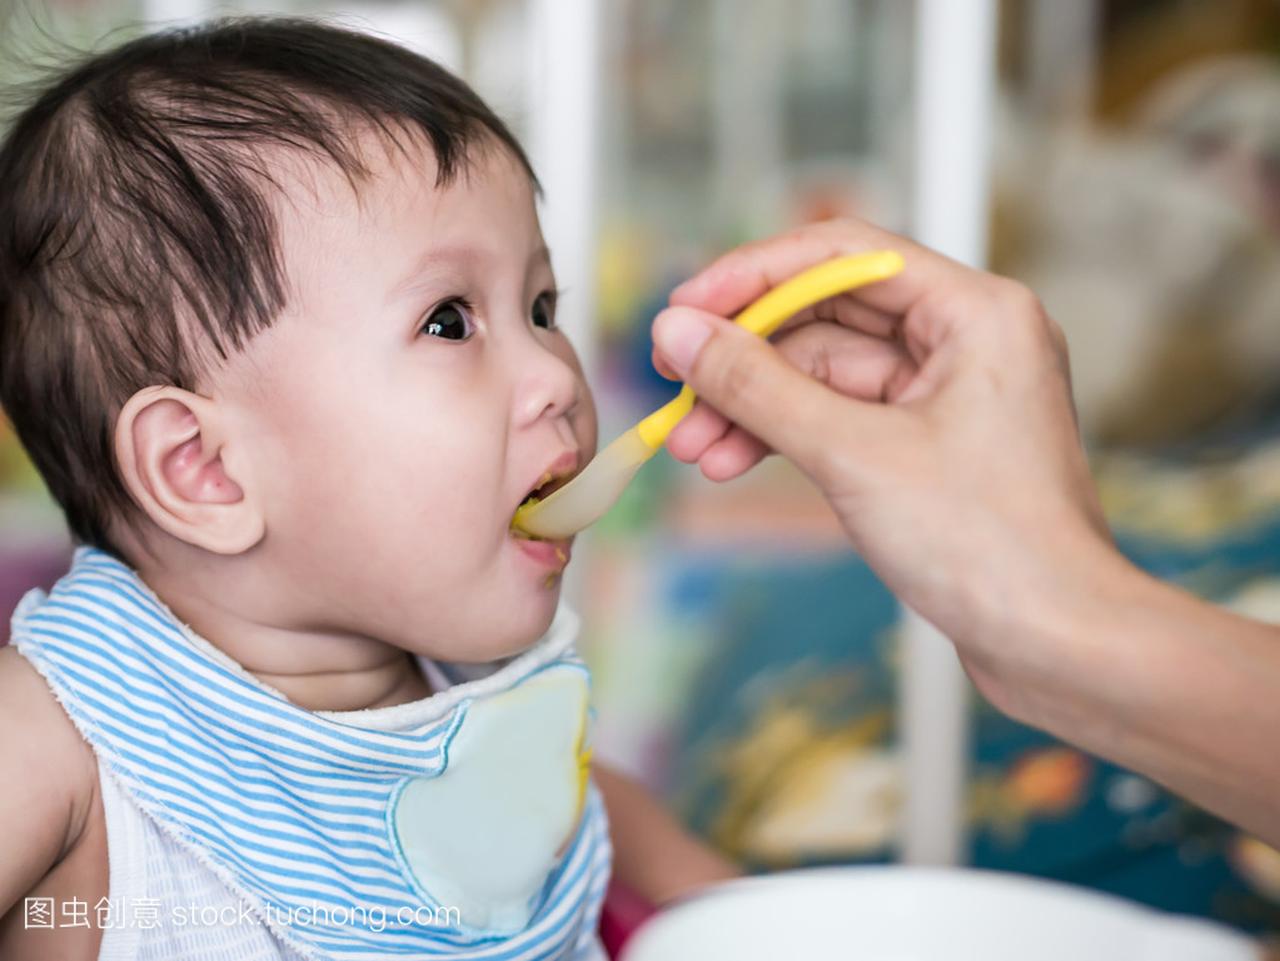 亚洲婴儿 6 个月大吃食物从勺子